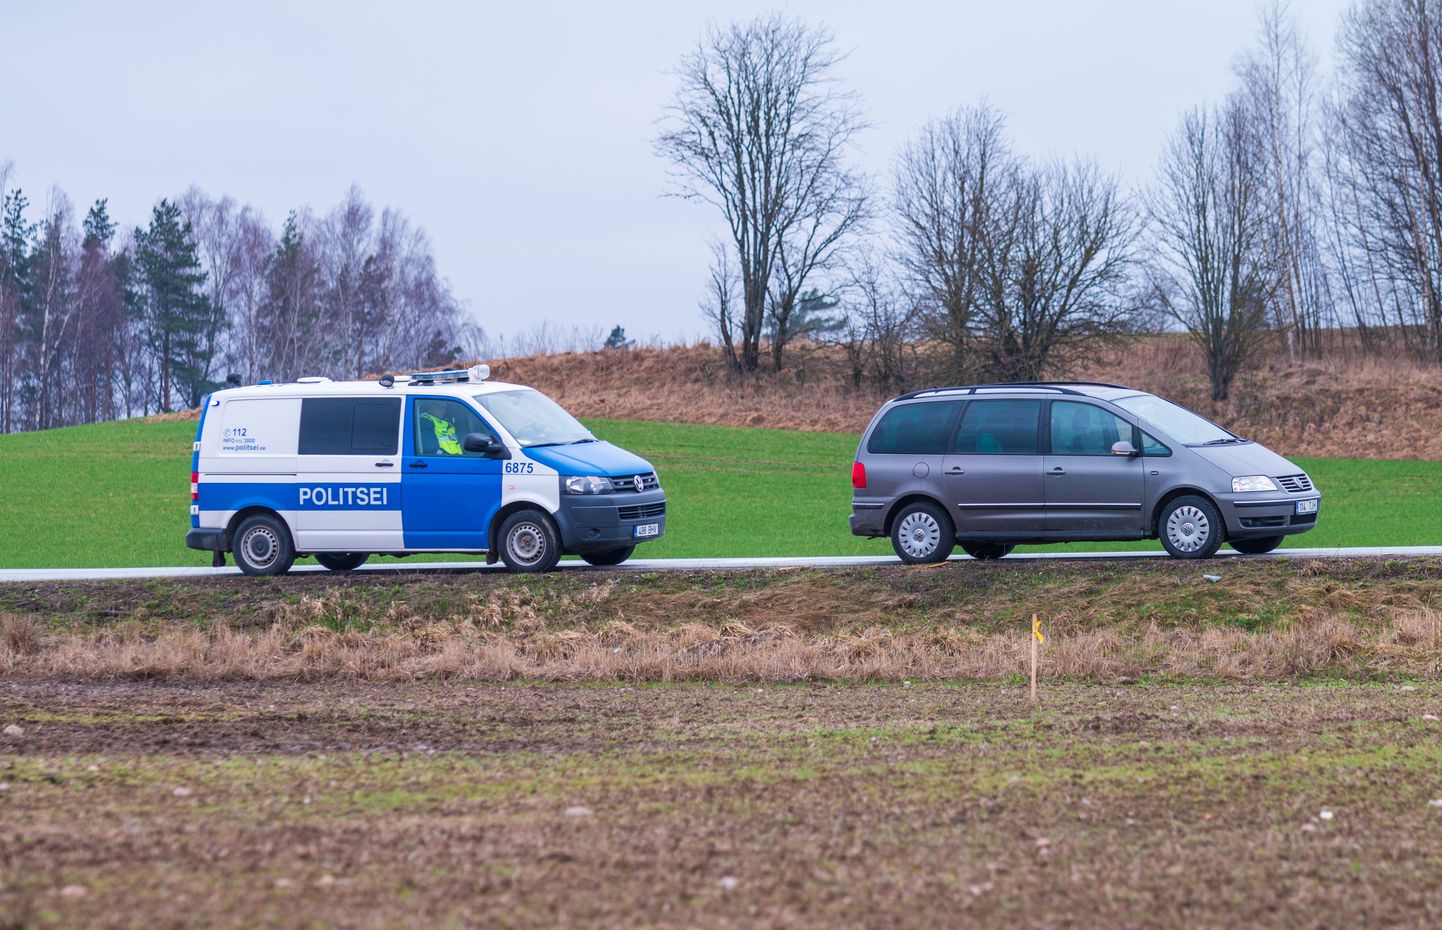 Politsei teeb tööd Osula teeristis Võrumaal.

Foto: Arvo Meeks / Lõuna-Eesti Postimees